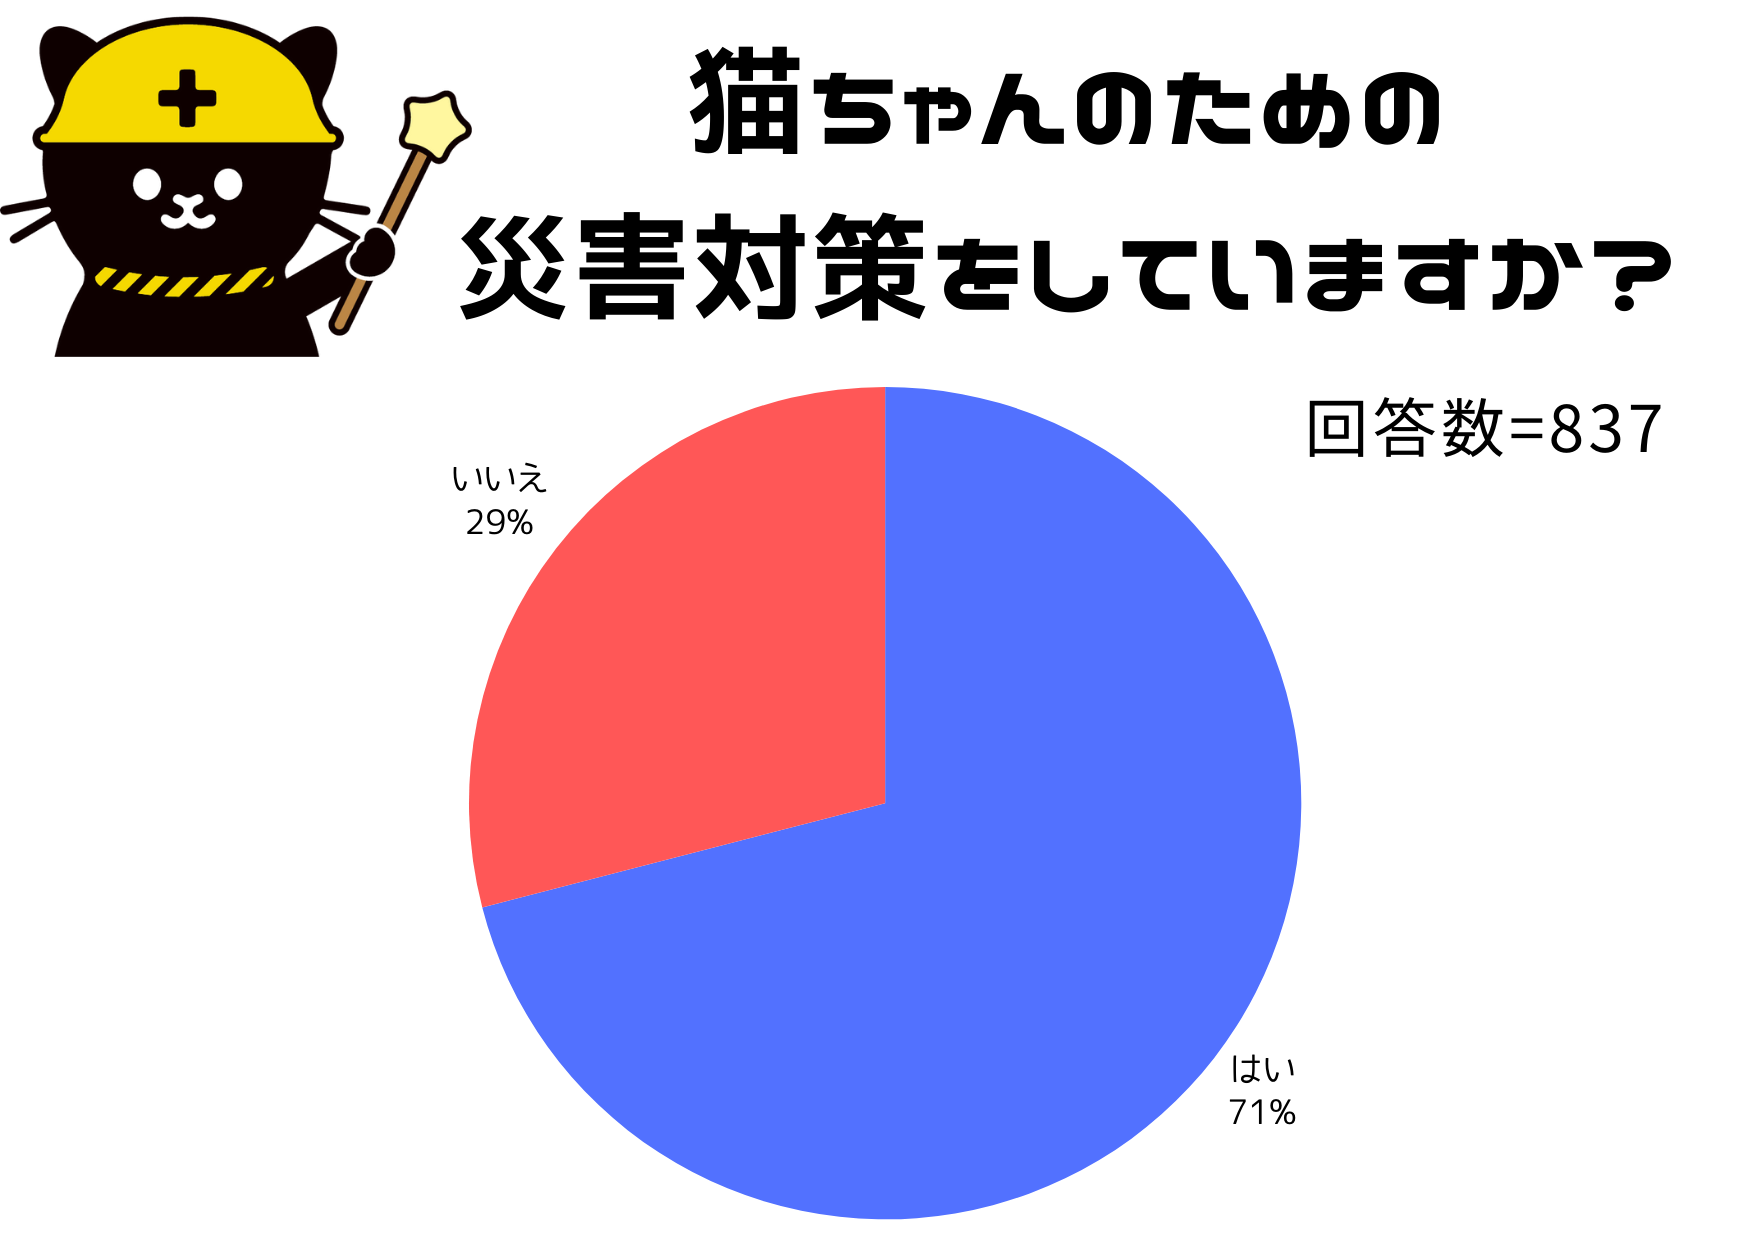 3.11͖hЈӎĂyLƂ̖hЂɊւ钲z
LI[i[71%Oɑ΍AЊQ΍Pʂ́uhЃObY̏v